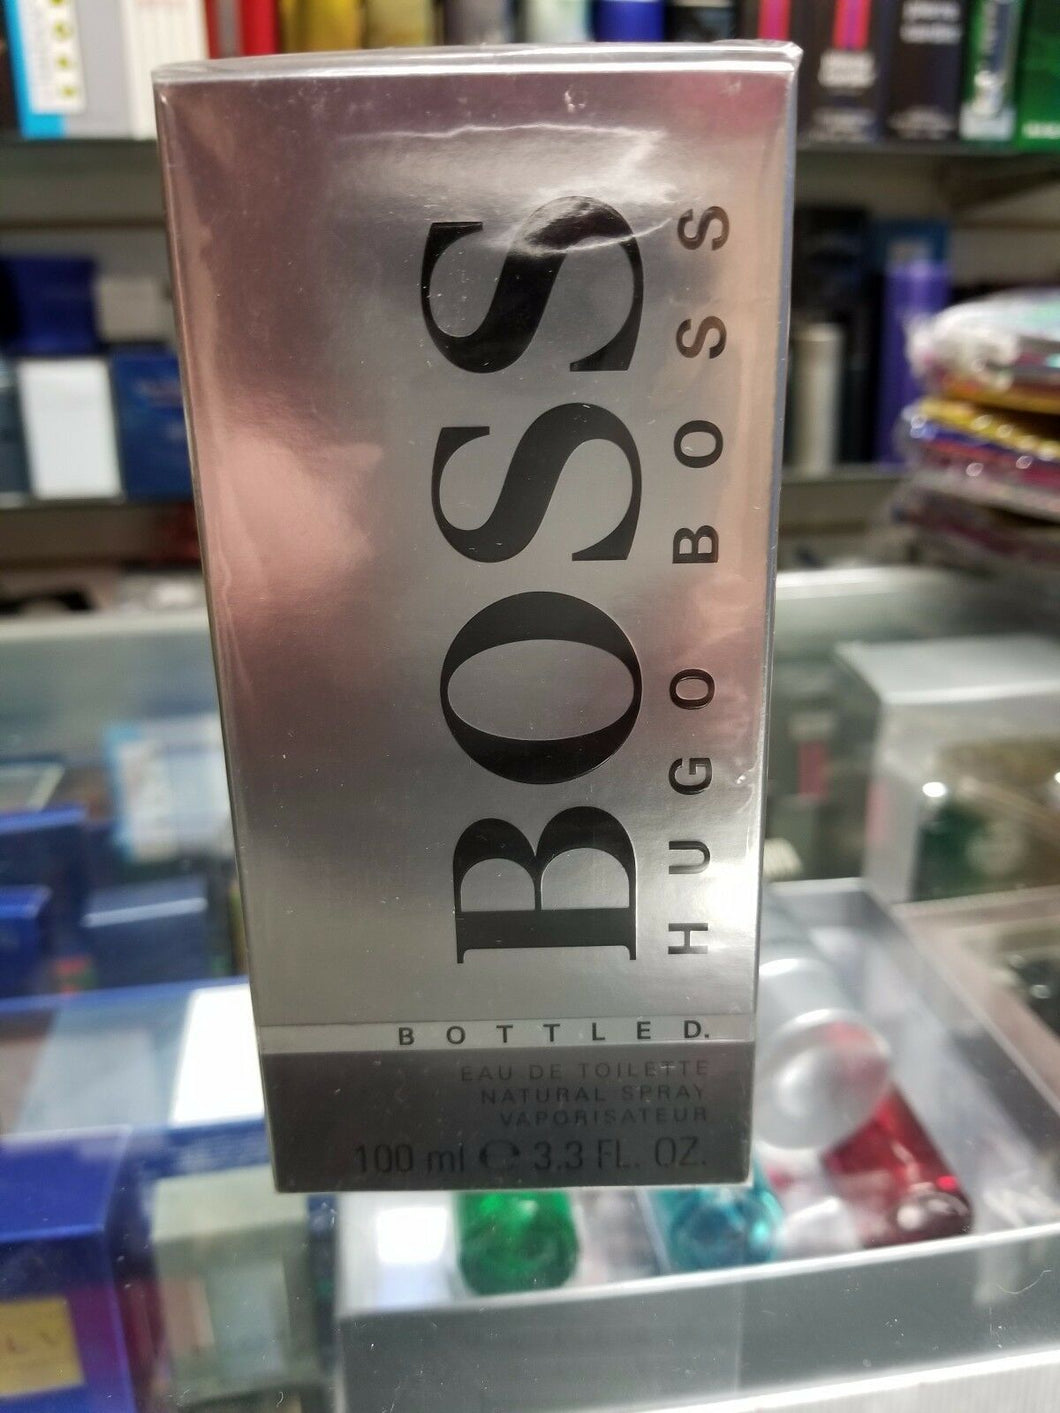 BOSS BOTTLED. by Hugo Boss 3.3 oz / 100 ml EDT Toilette Spray for Men * SEALED * - Perfume Gallery